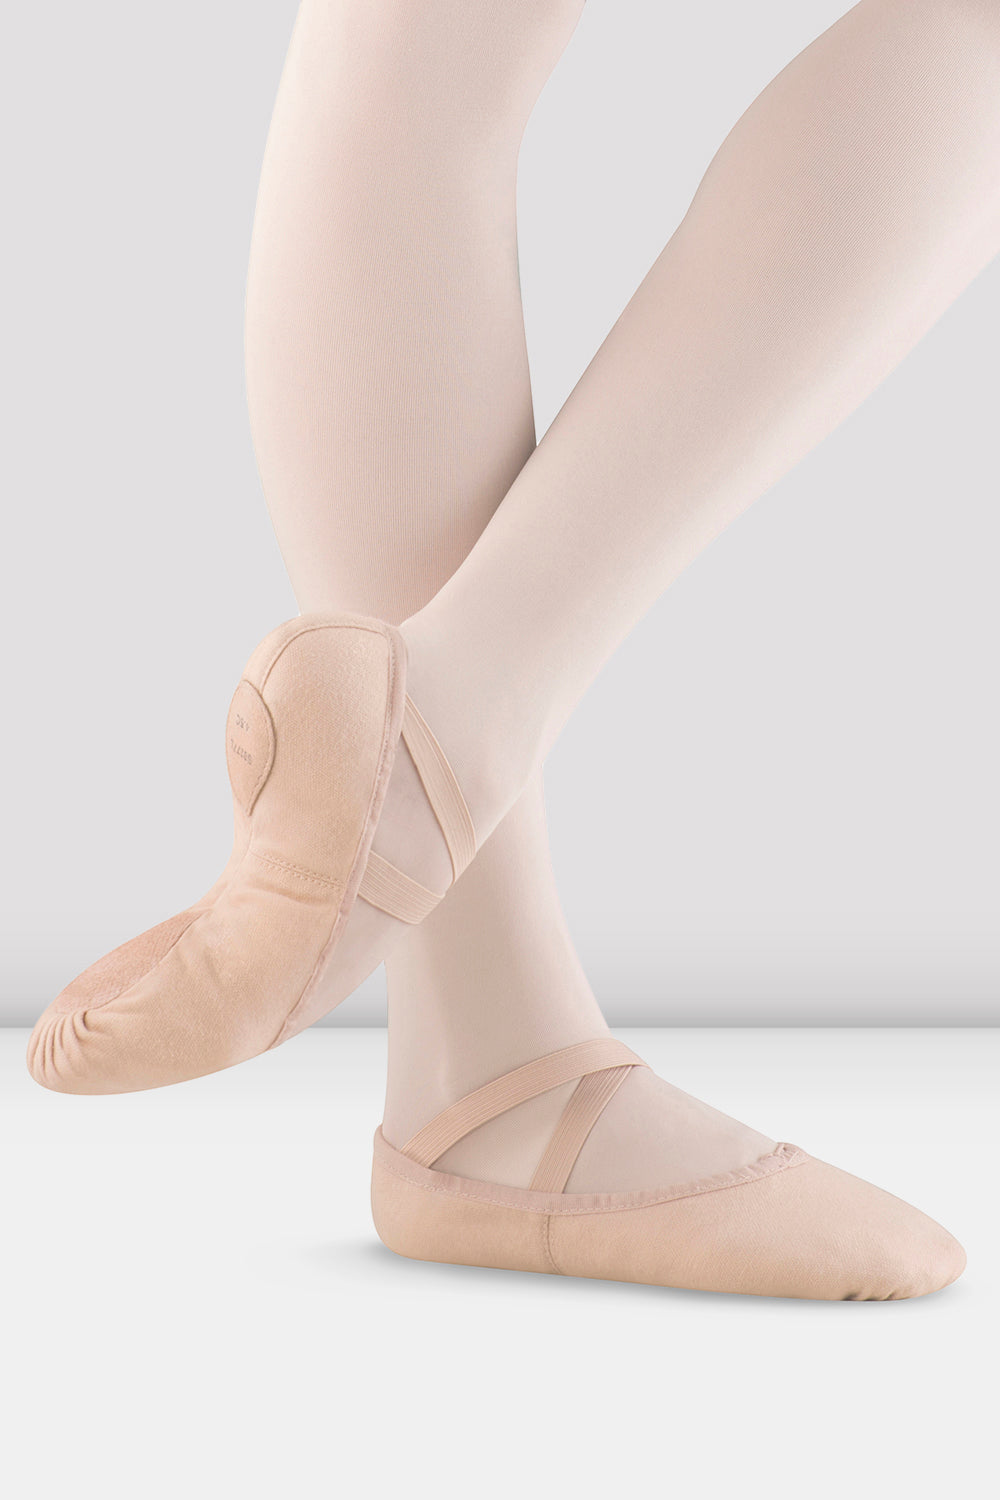 bloch girls ballet shoes